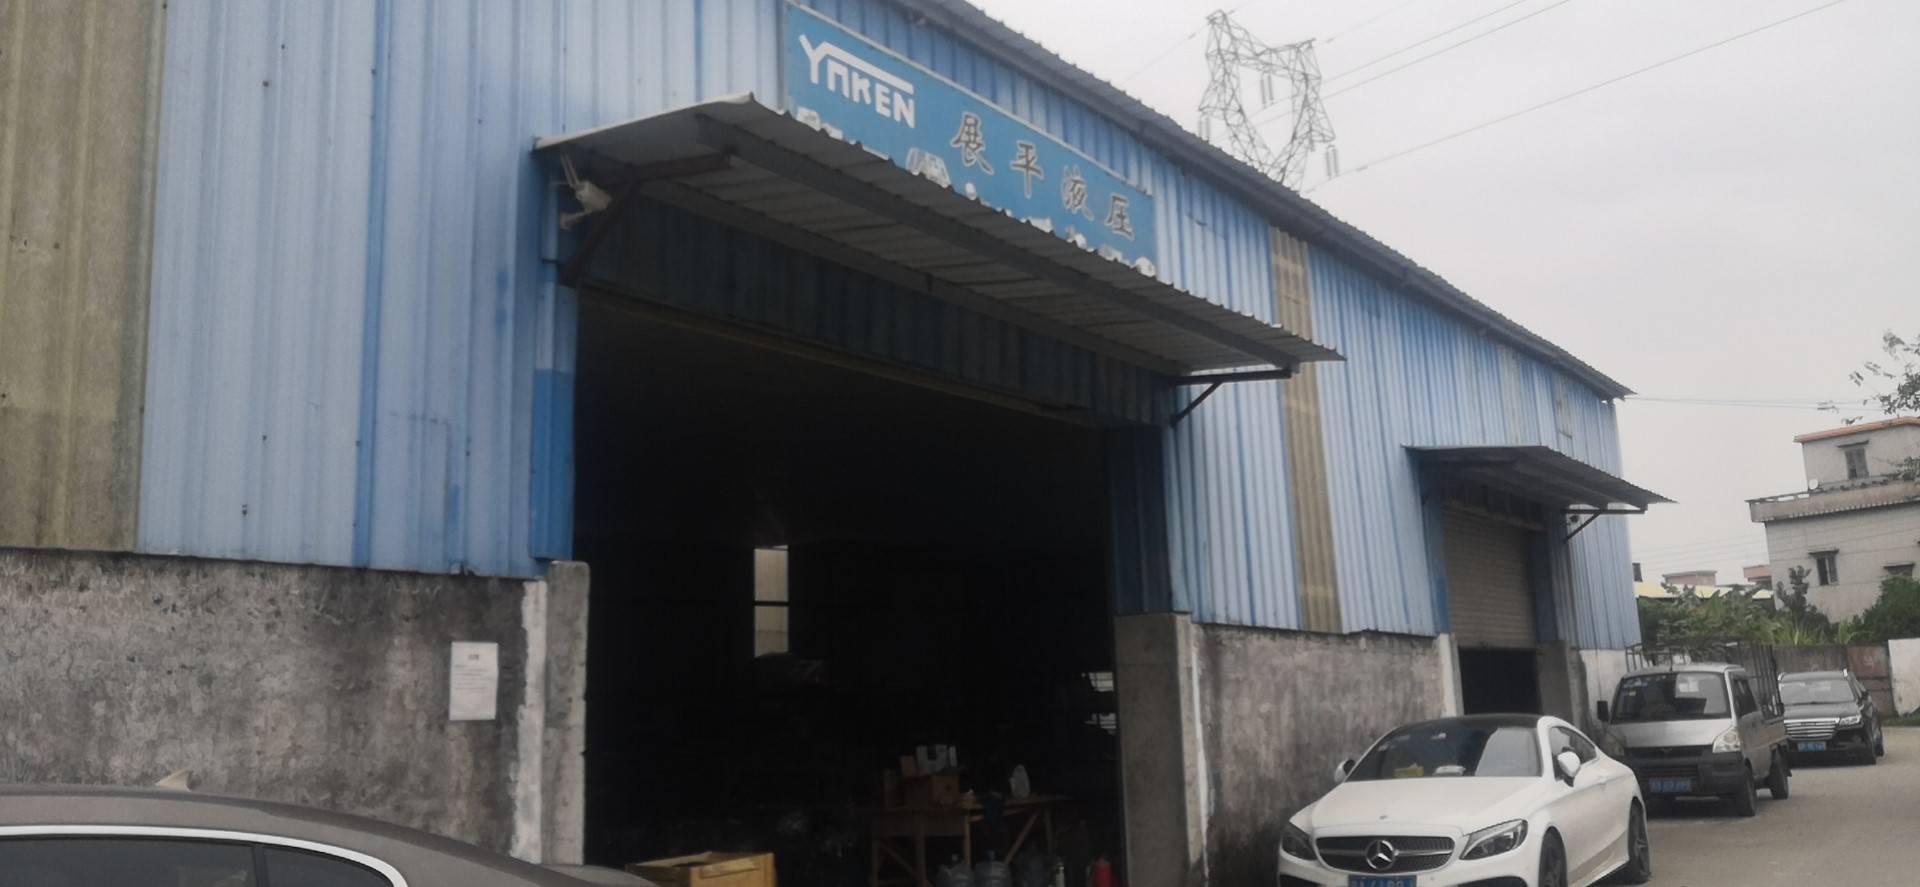   Guangzhou Zhanping Hydraulic Power Machinery Co., Ltd